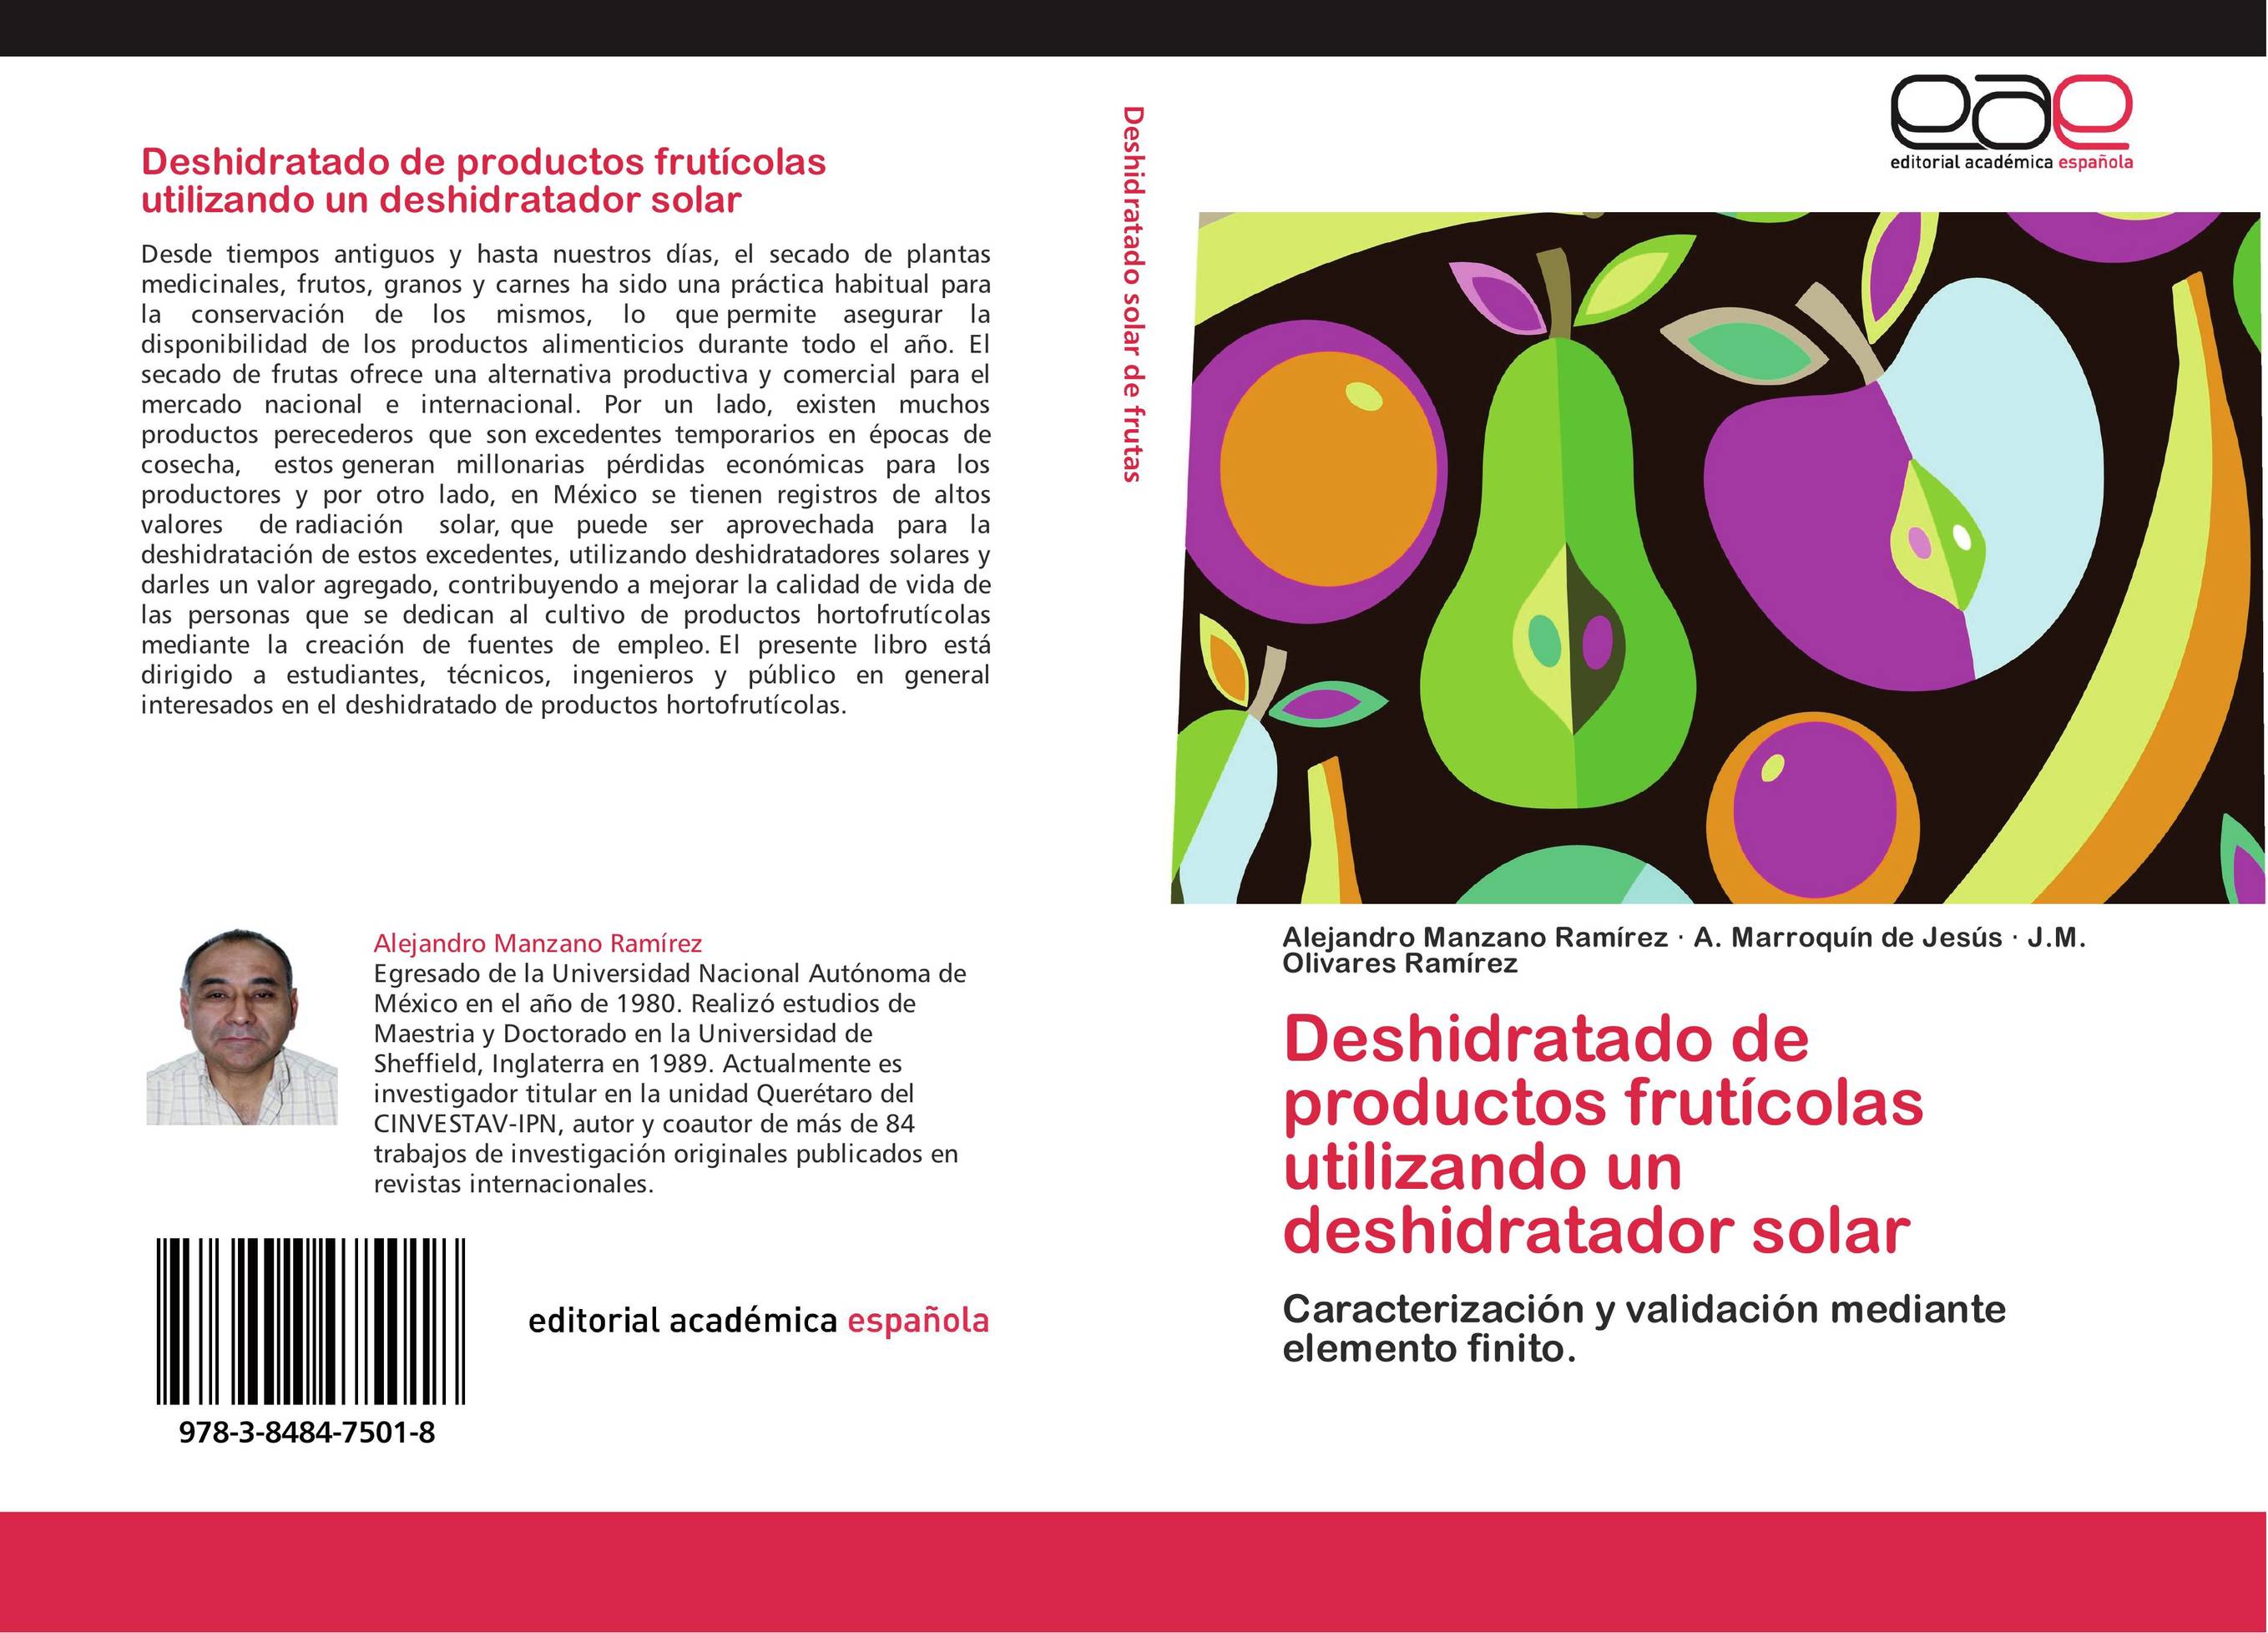 Deshidratado de productos frutícolas utilizando un deshidratador solar